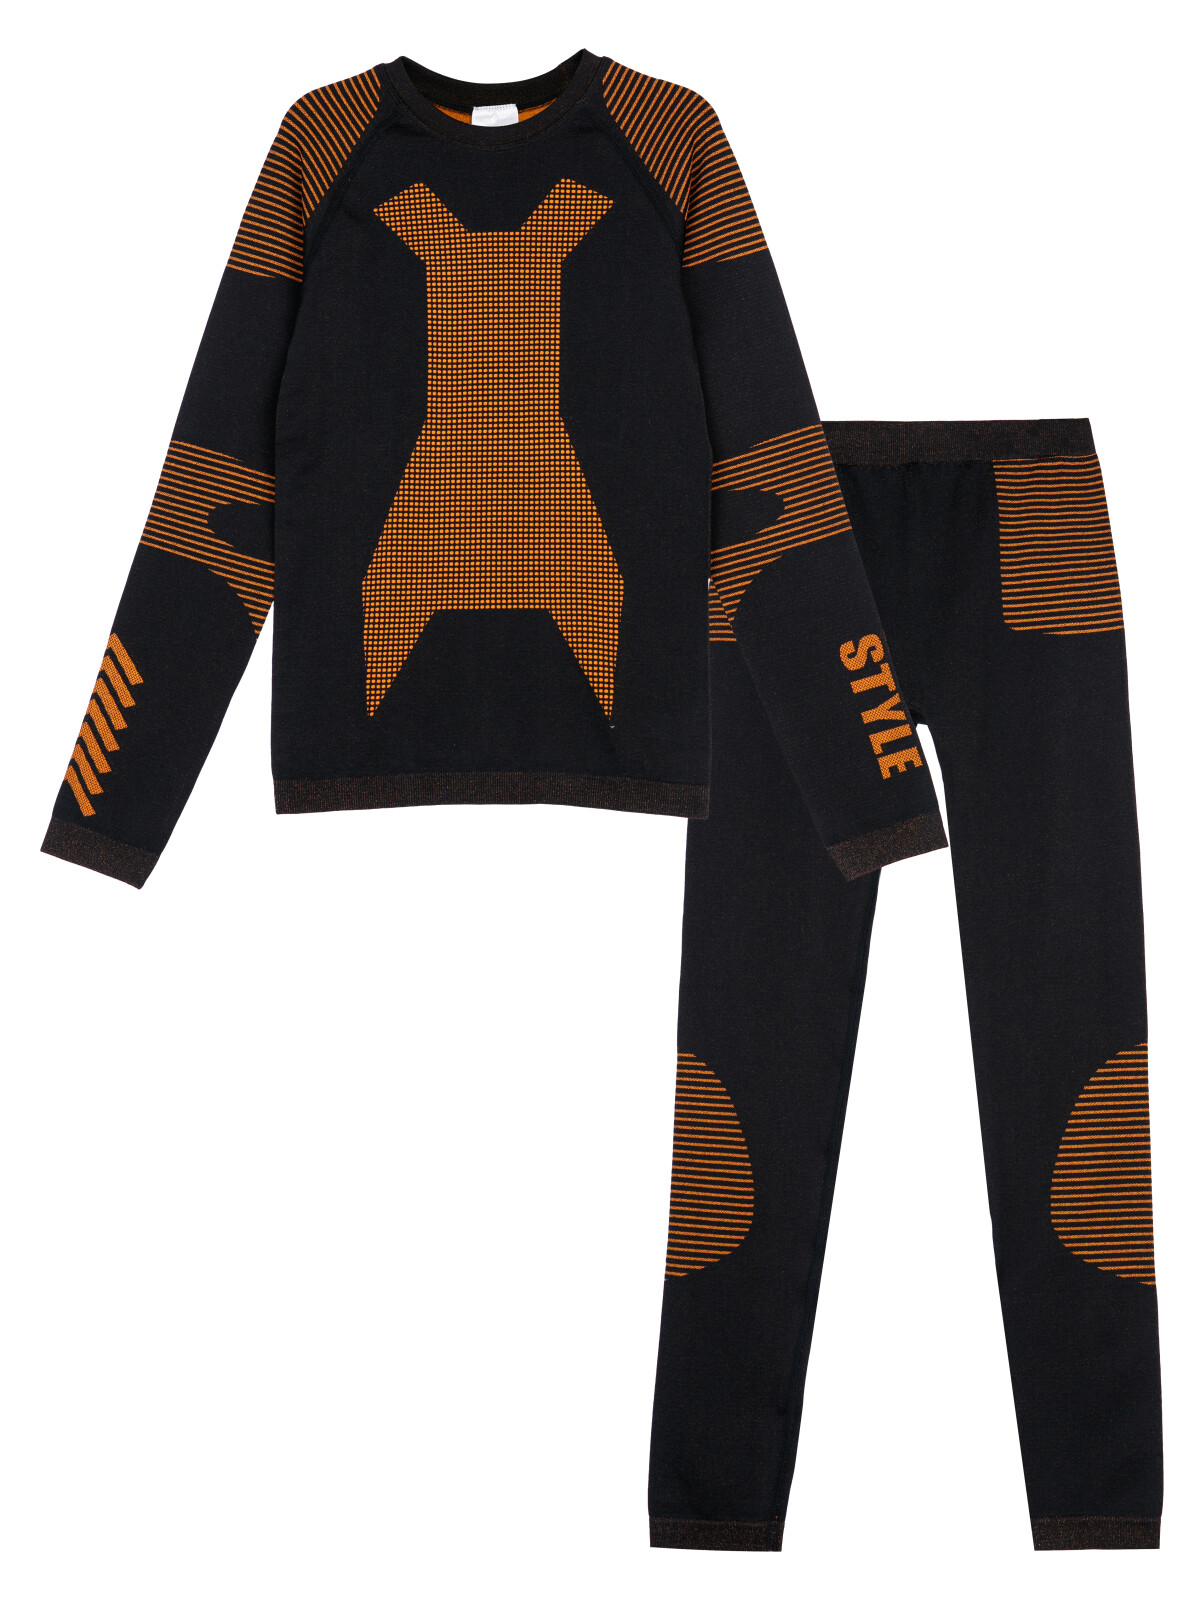 Термокомплект для мальчиков PlayToday: брюки, толстовка, черный,оранжевый, 140-146